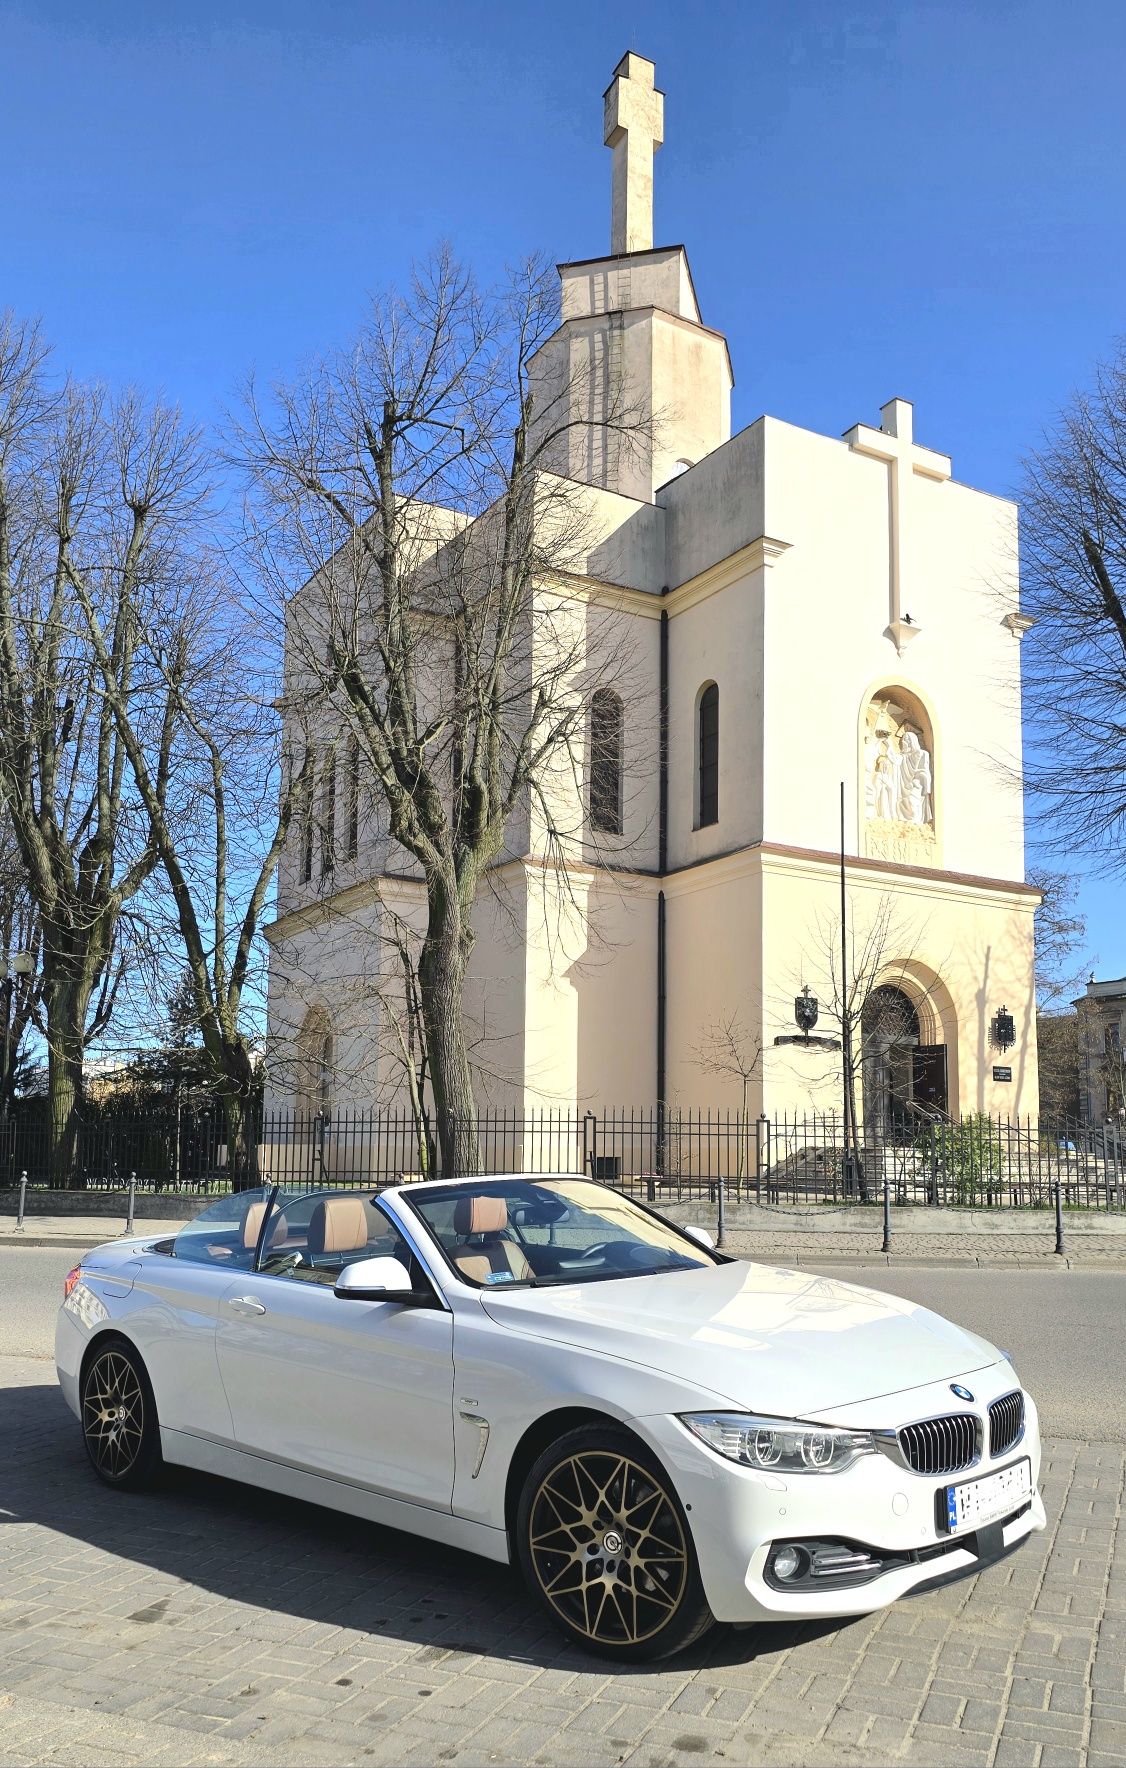 Samochód Auto Cabrio do ślubu BMW 428